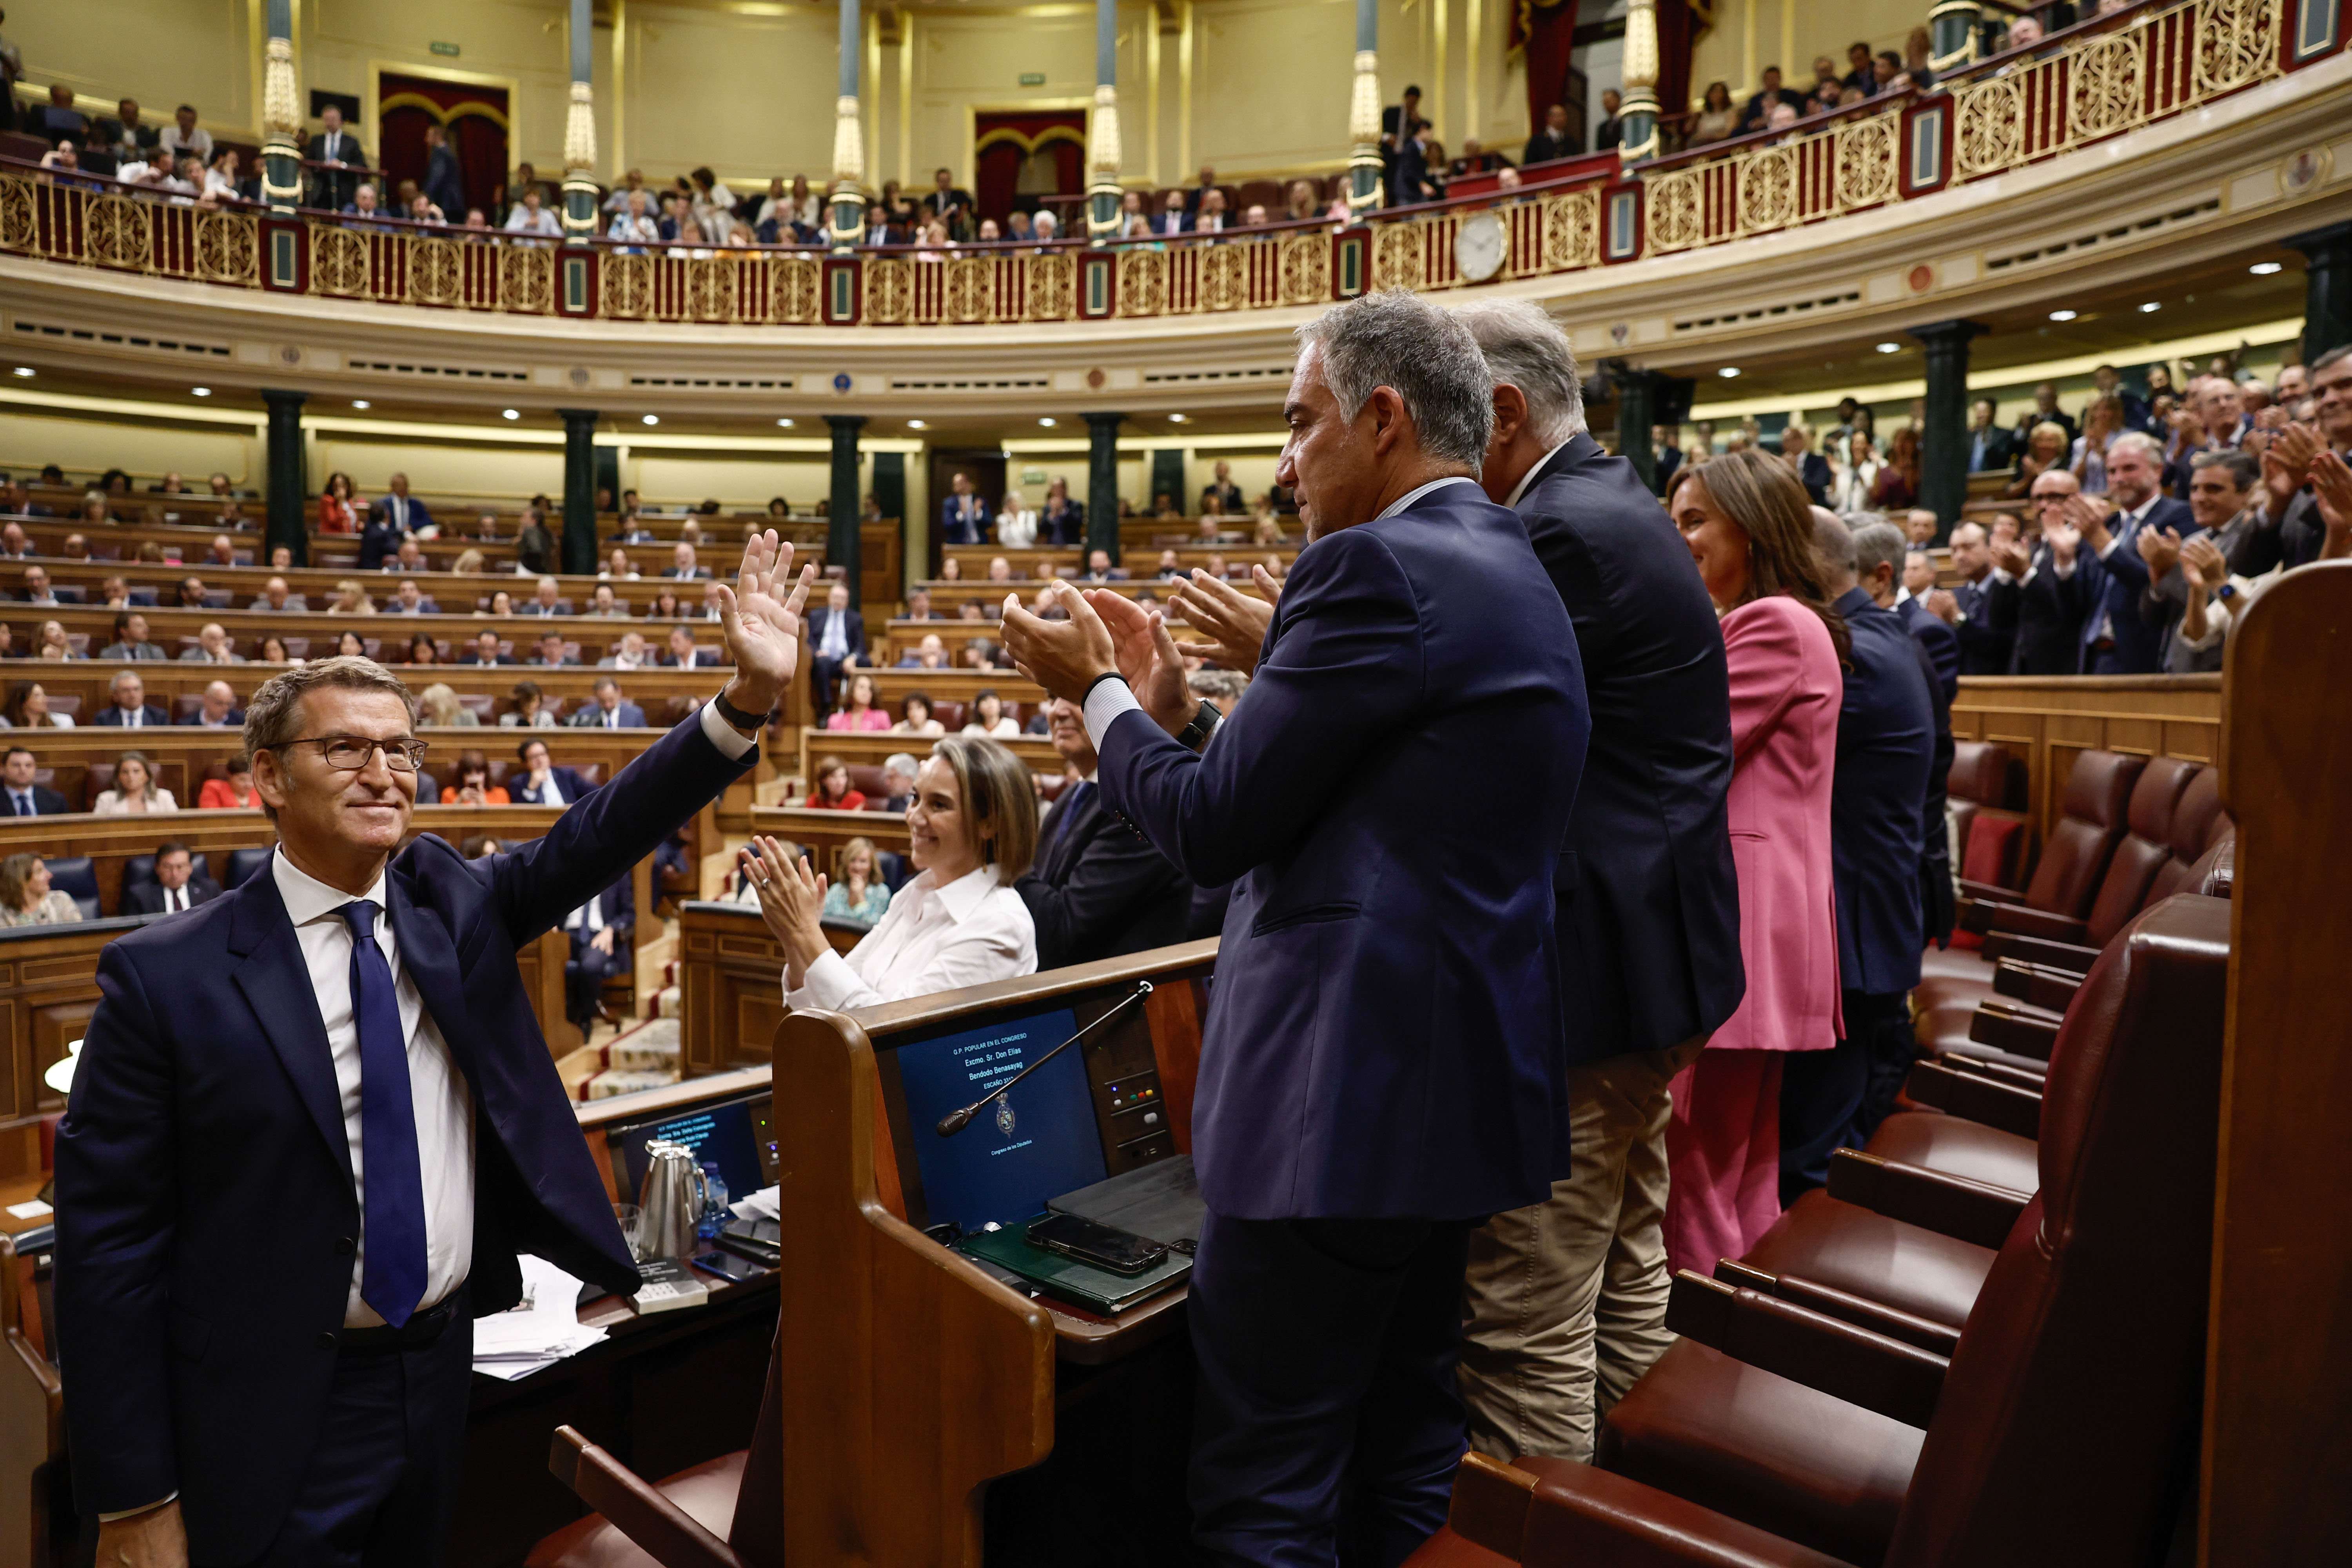 Eva Cárdenas, nòvia de Feijóo, apareix amb nova imatge al Congrés: molt rossa